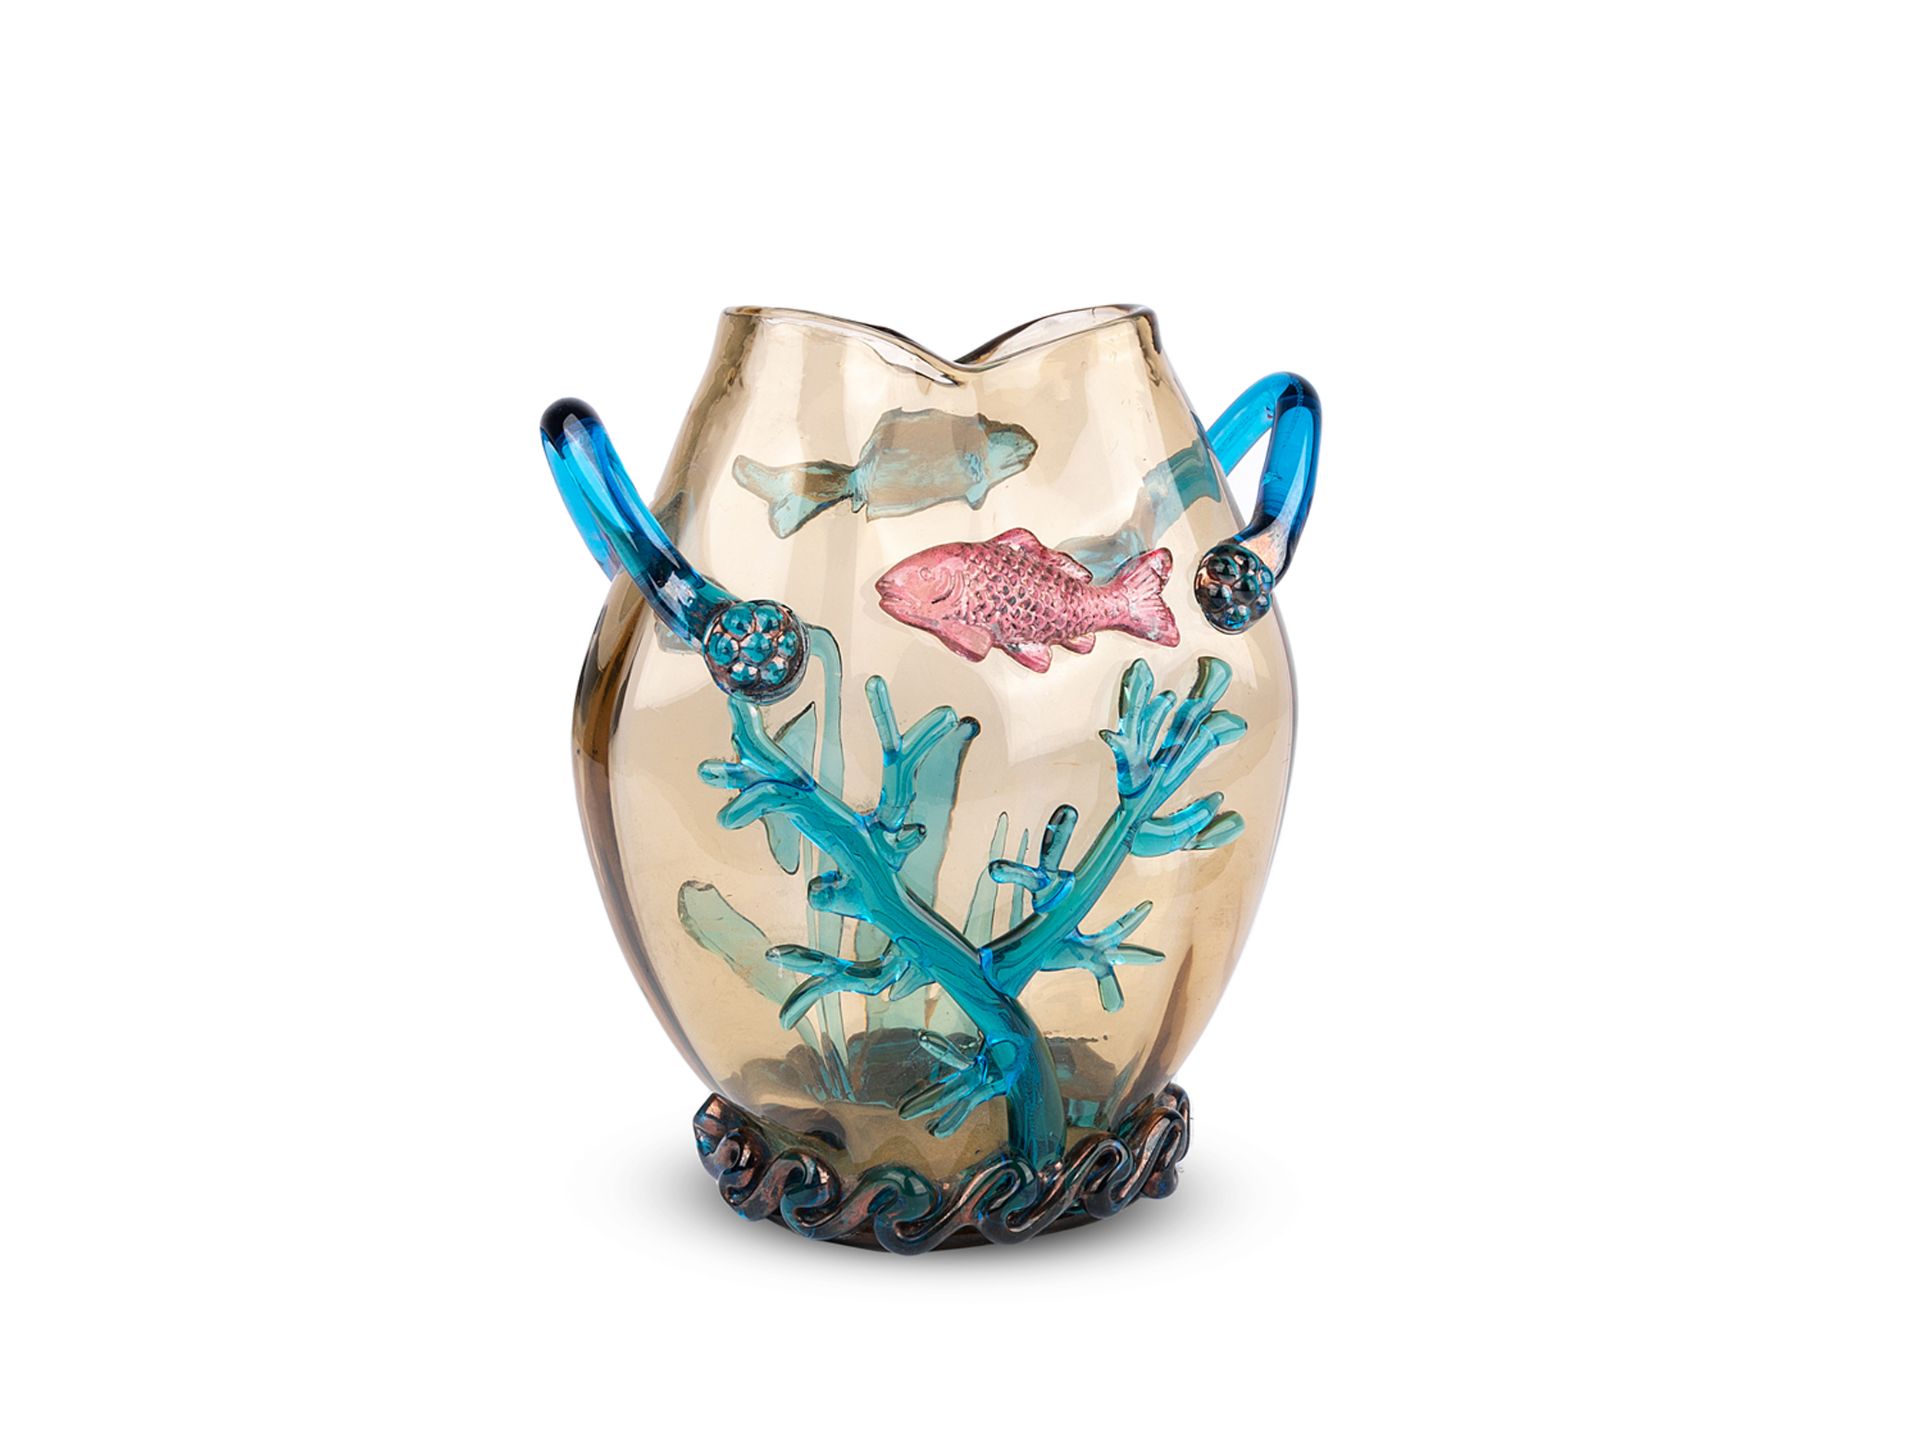 Glass vase with underwater world